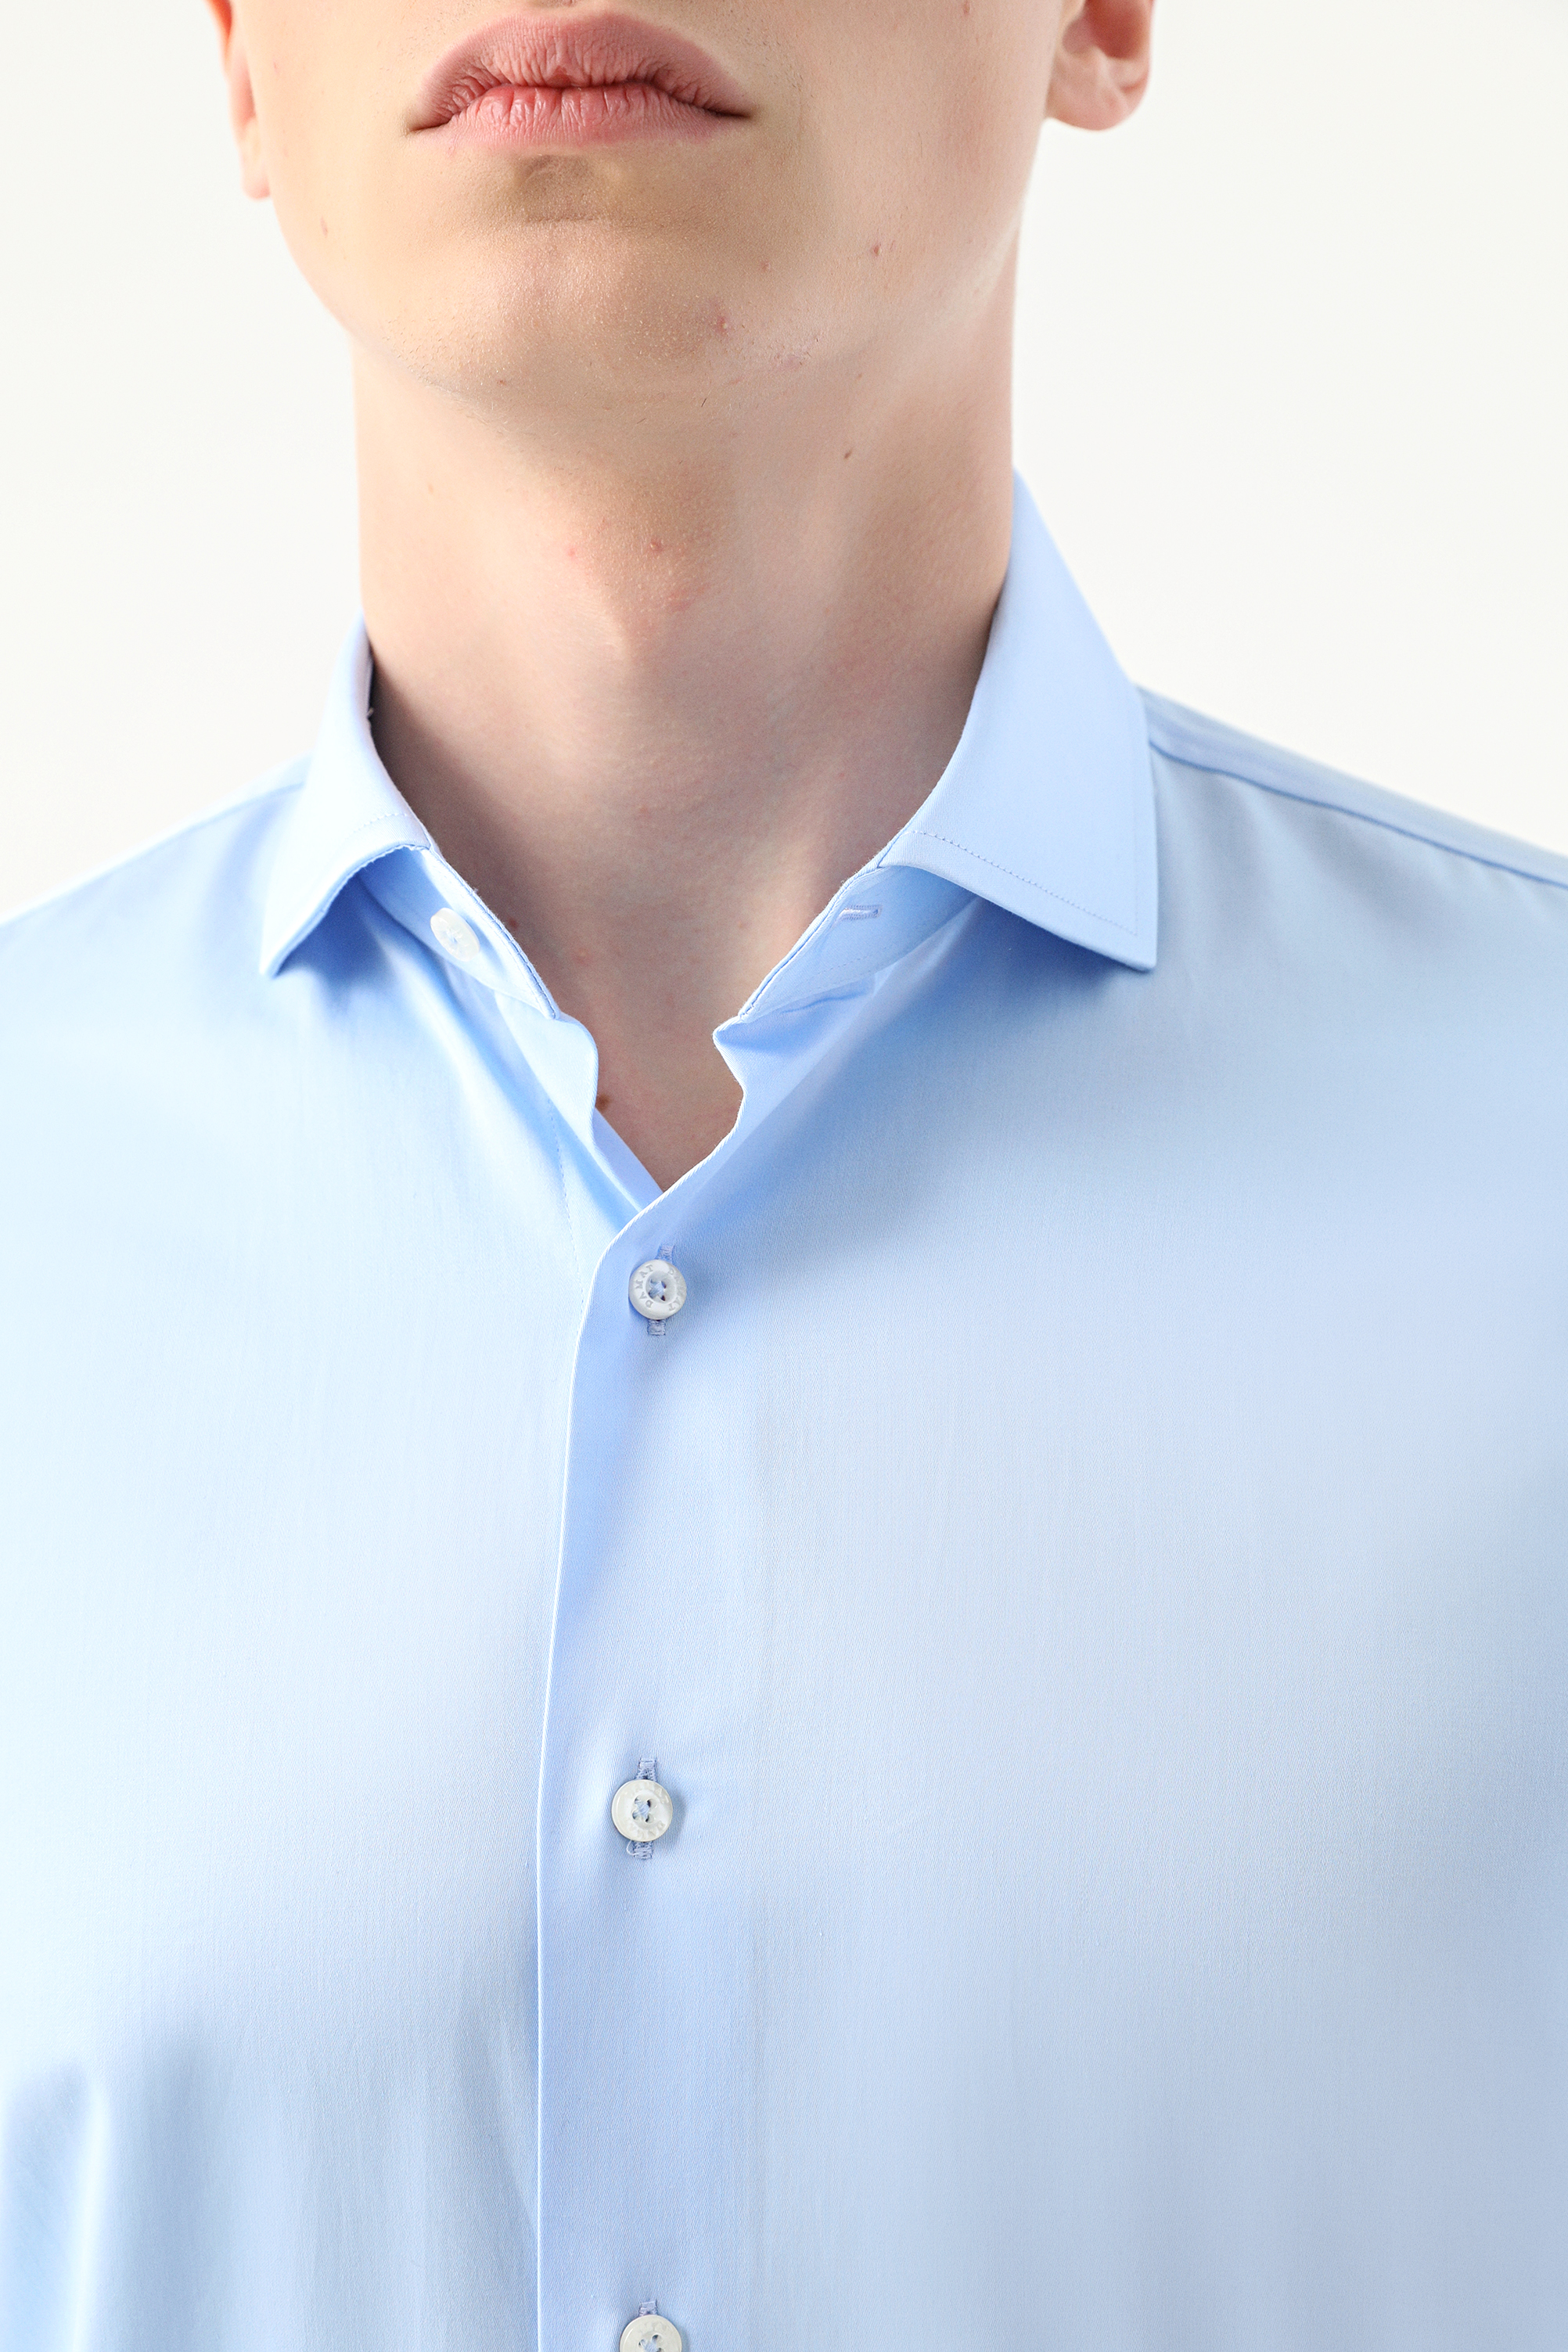 Damat Tween Damat Slim Fit Açık Mavi Düz Nano Care Gömlek. 2